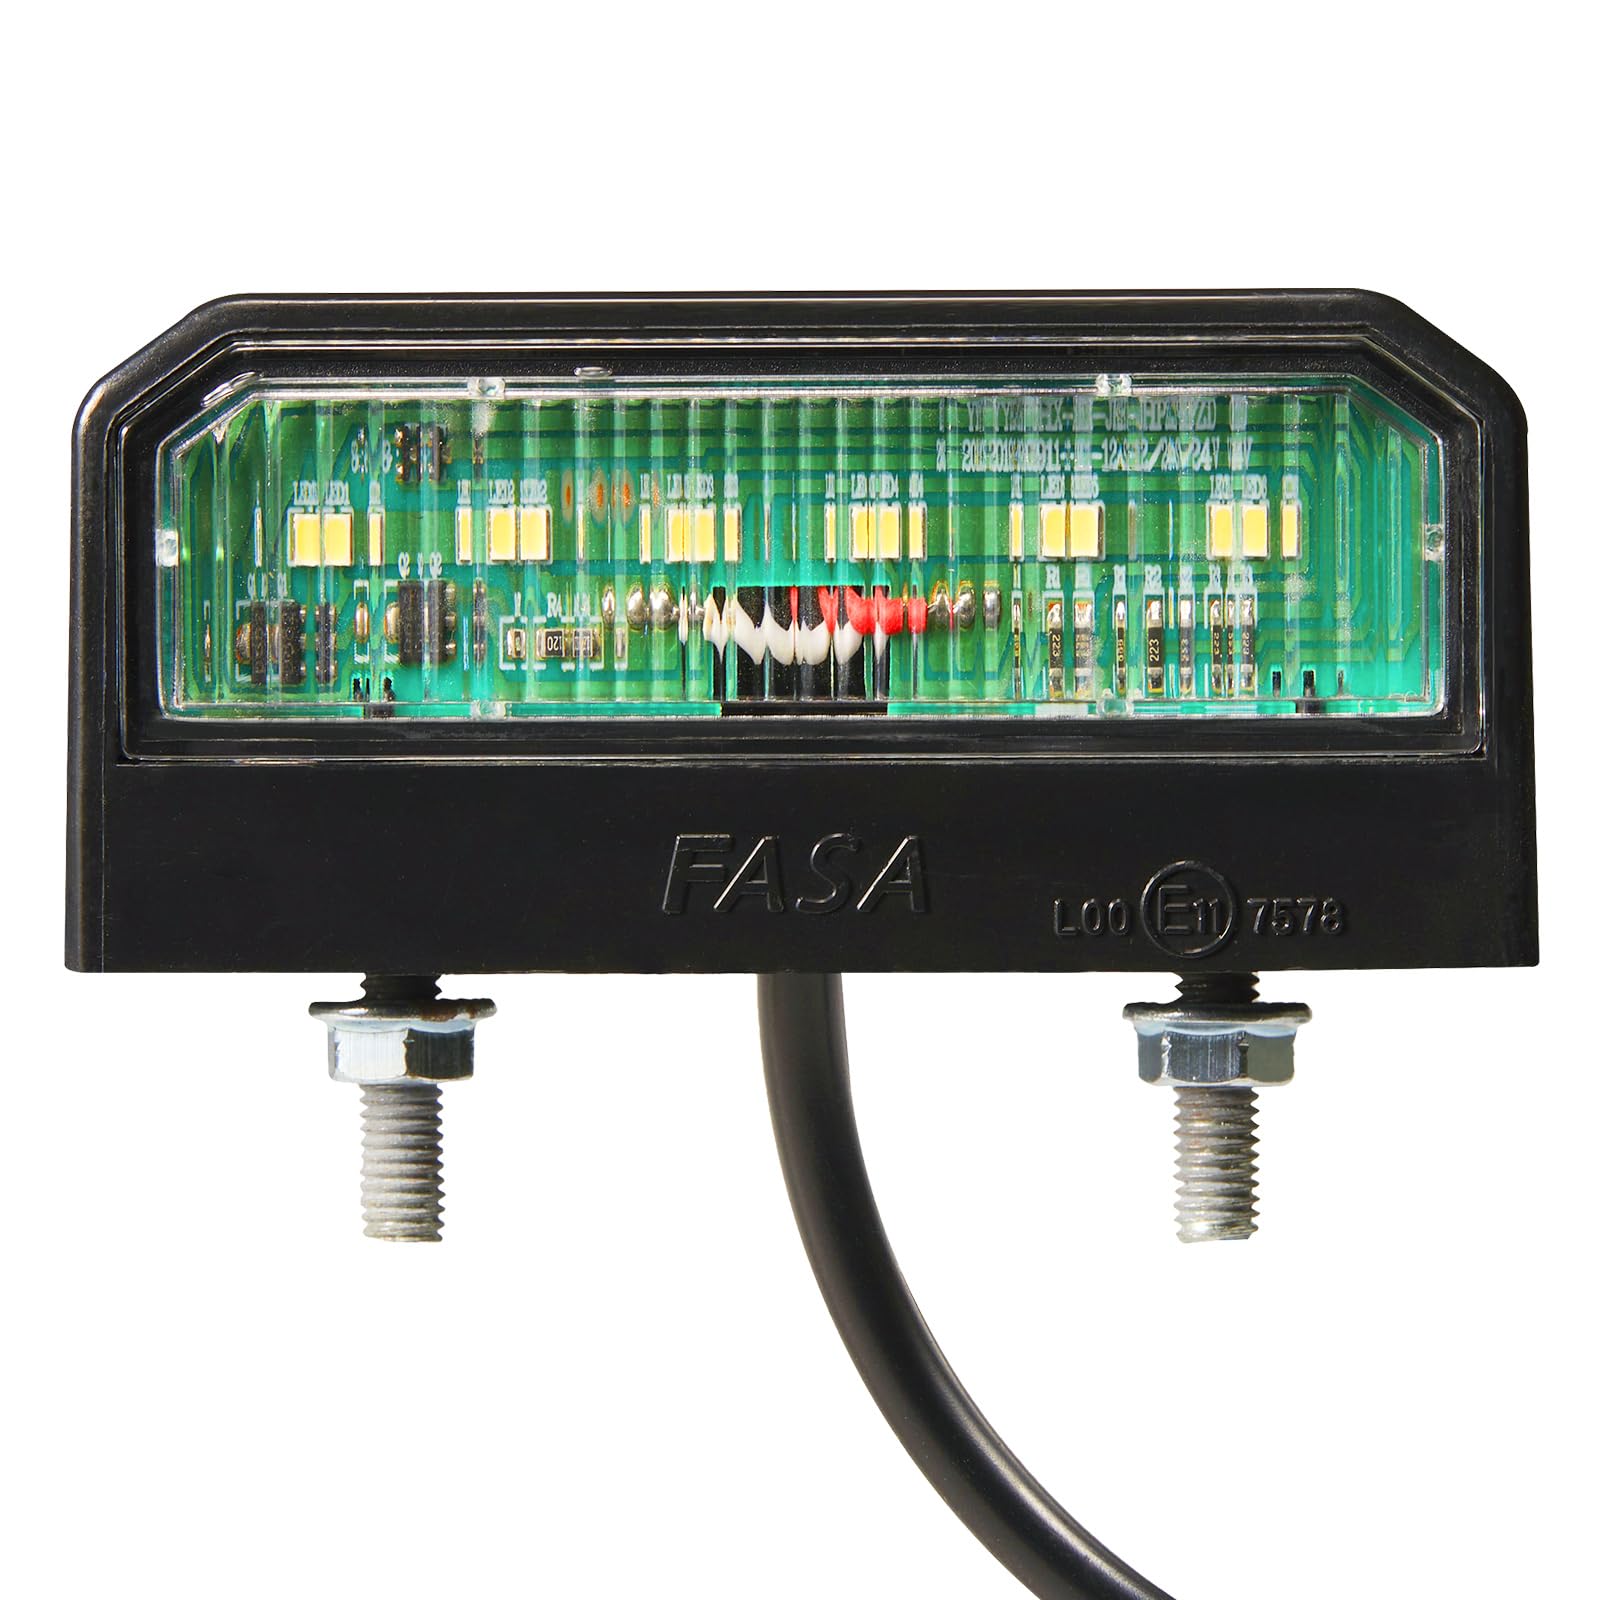 SPARKMOTO Kennzeichenleuchte LED 12V 24V, 1 Stück LED Kennzeichenbeleuchtung anhänger, Wasserdicht Nummernschildbeleuchtung Hinten LED für PKW Anhänger,LKW, Kaltes Weiß Kennzeichenbeleuchtung LED von SPARKMOTO